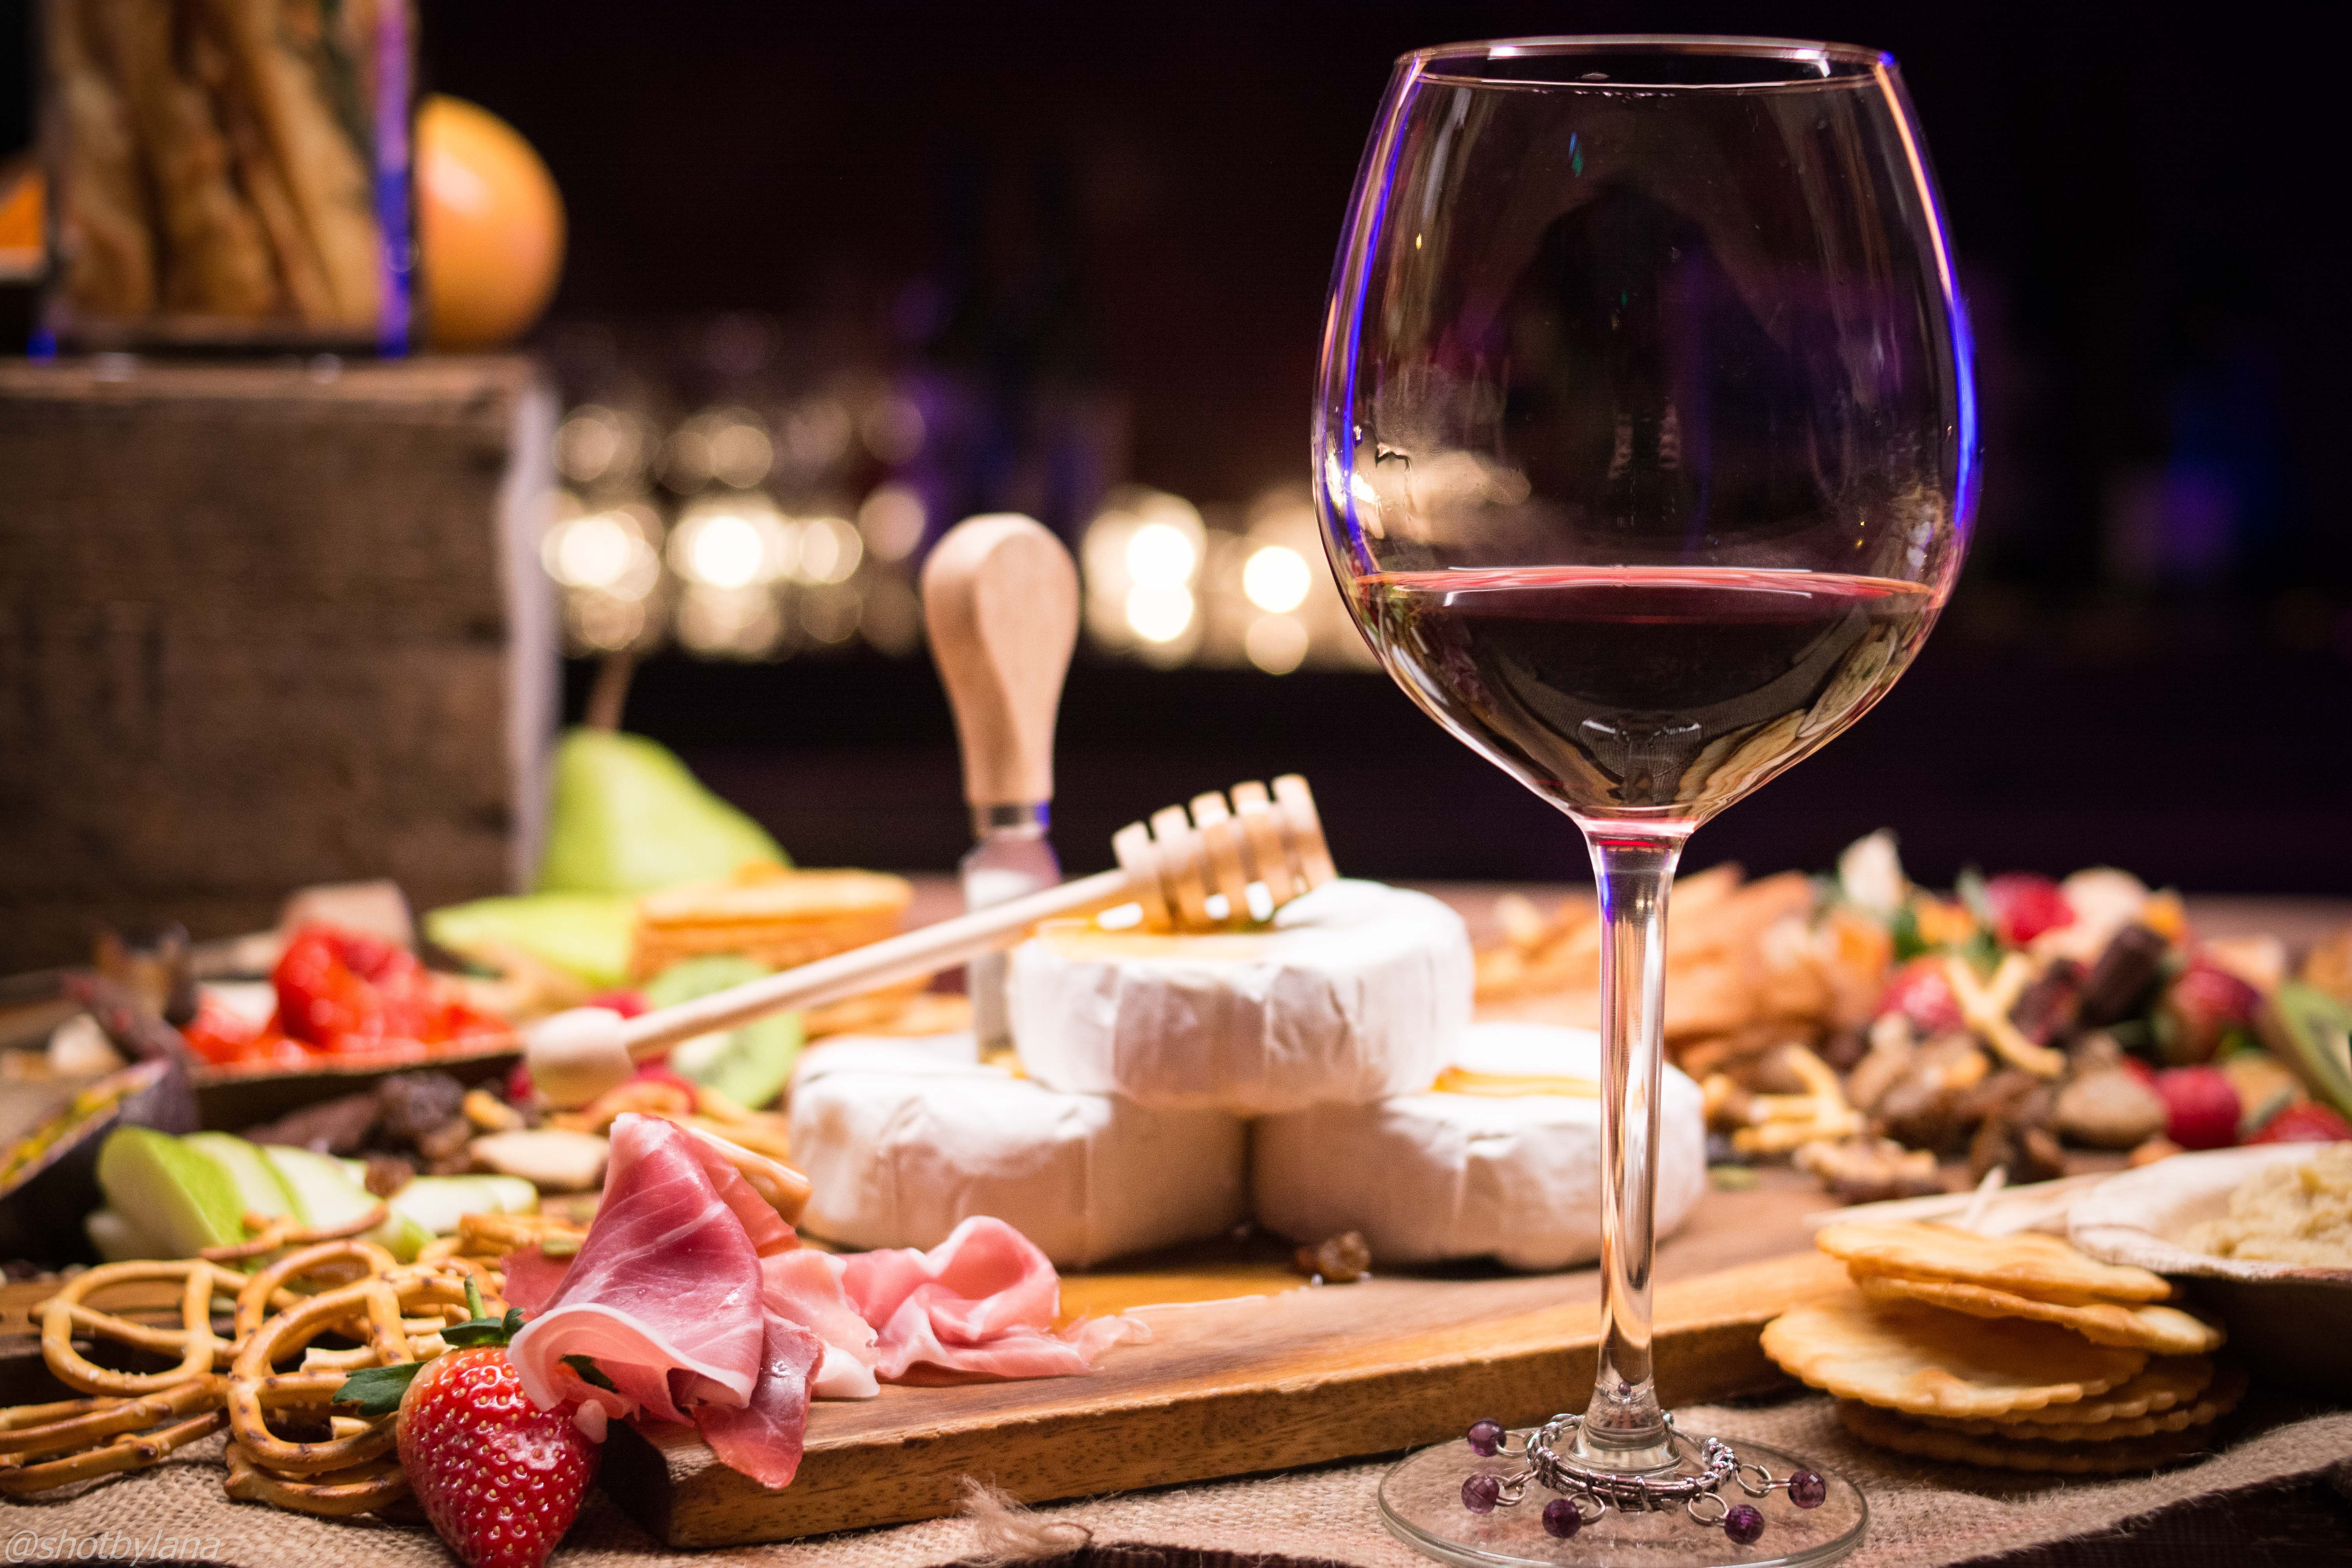 Choisir un bon vin pour donner plus d’ambiance à une fête